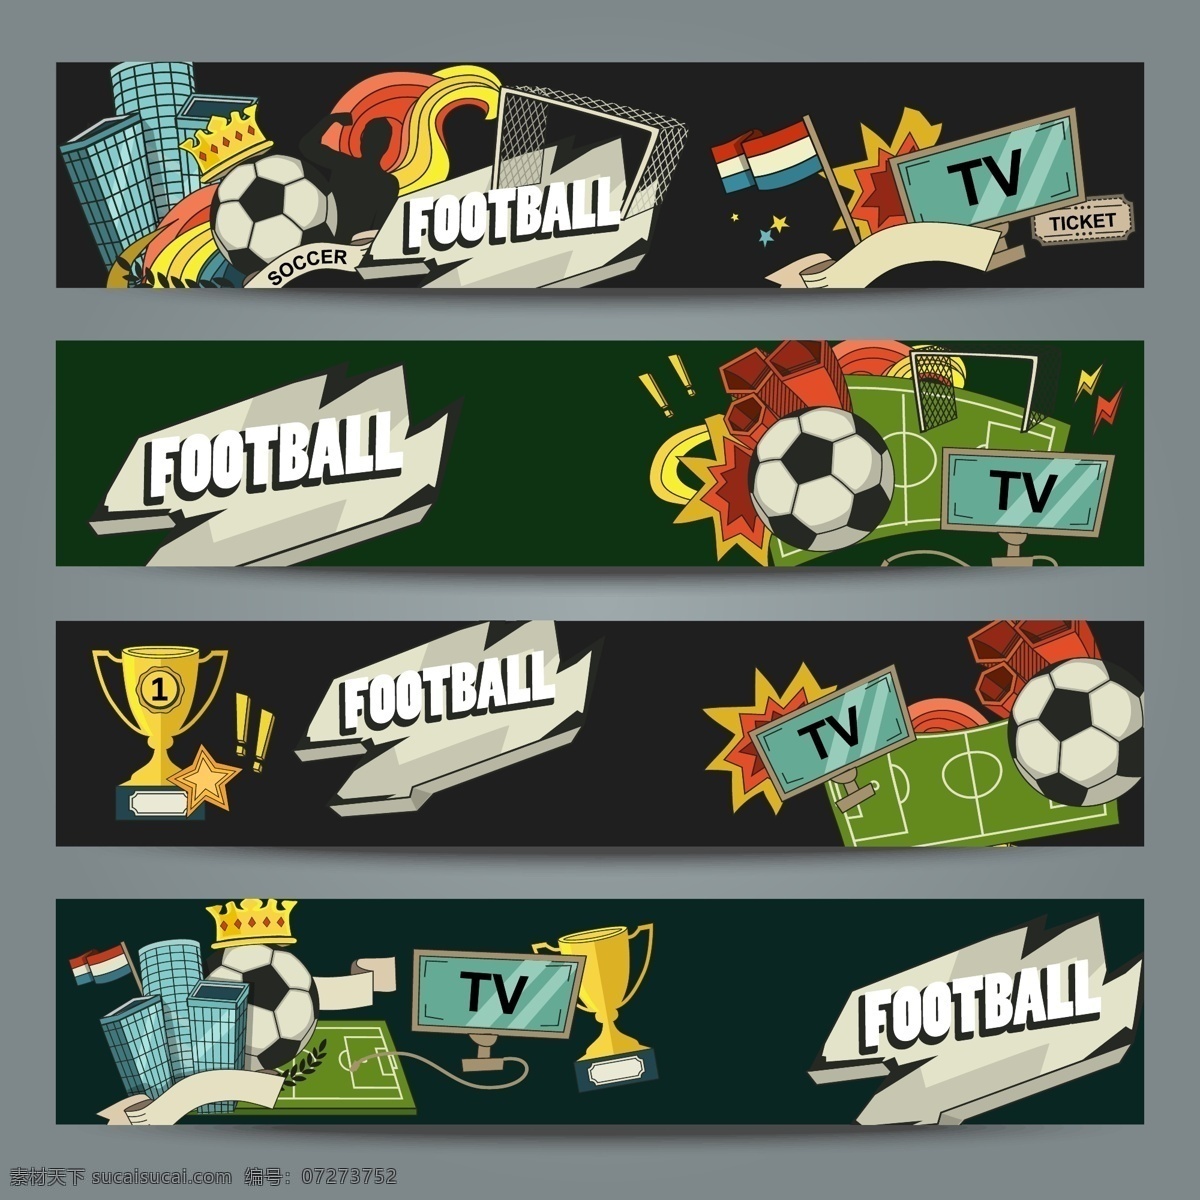 足球 矢量 创意 矢量素材 背景素材 海报 设计素材